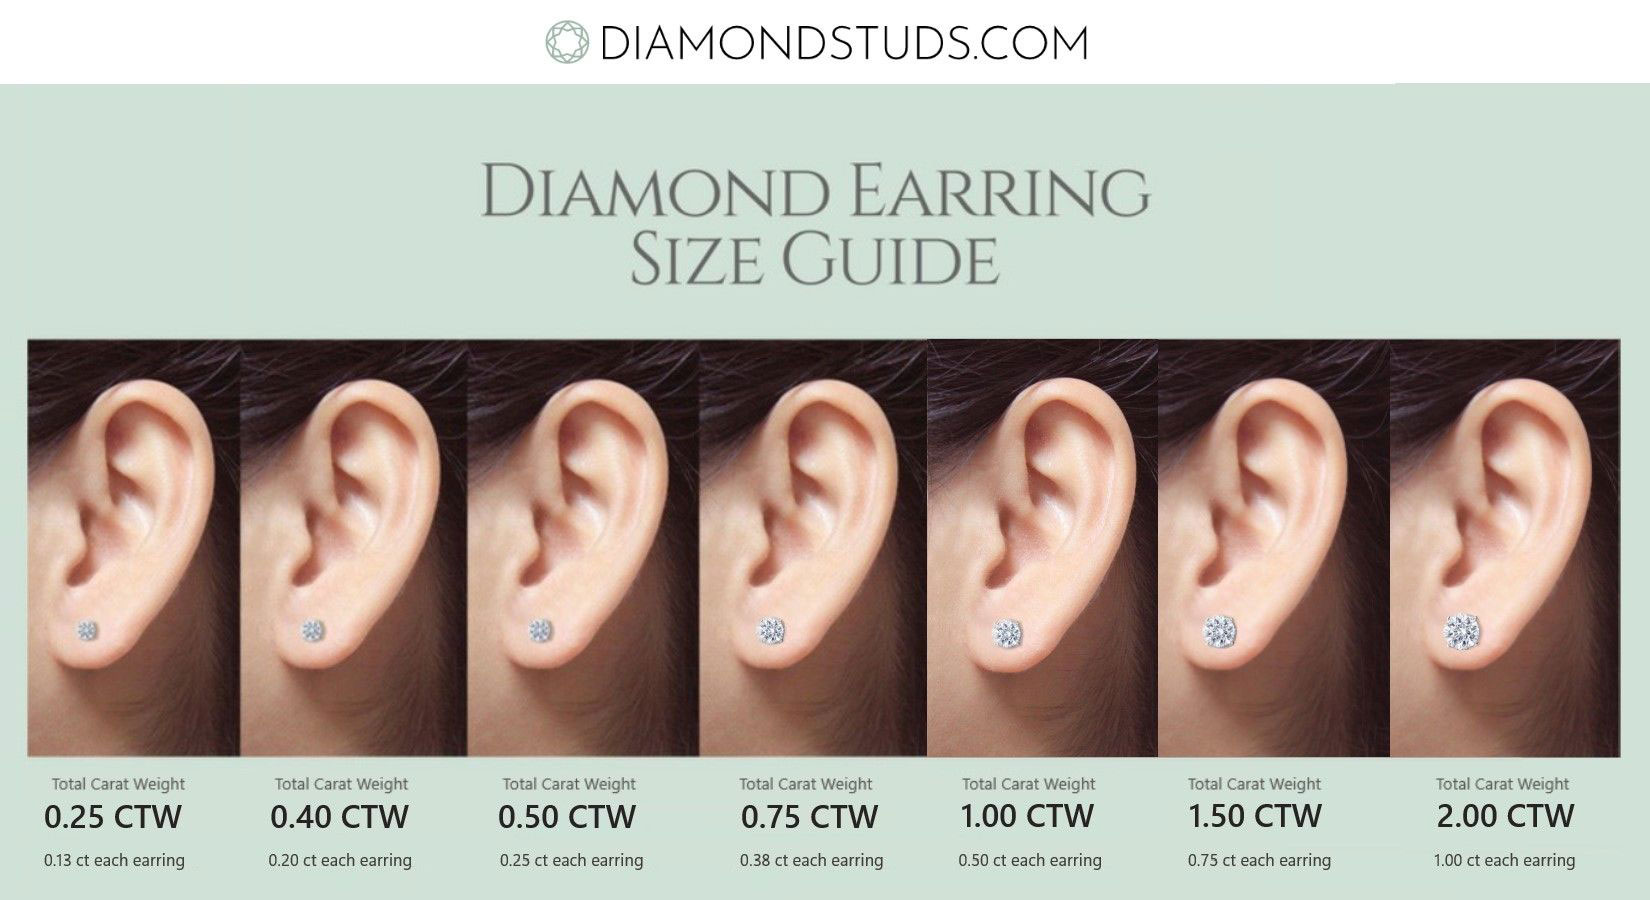 Diamond earring size guide